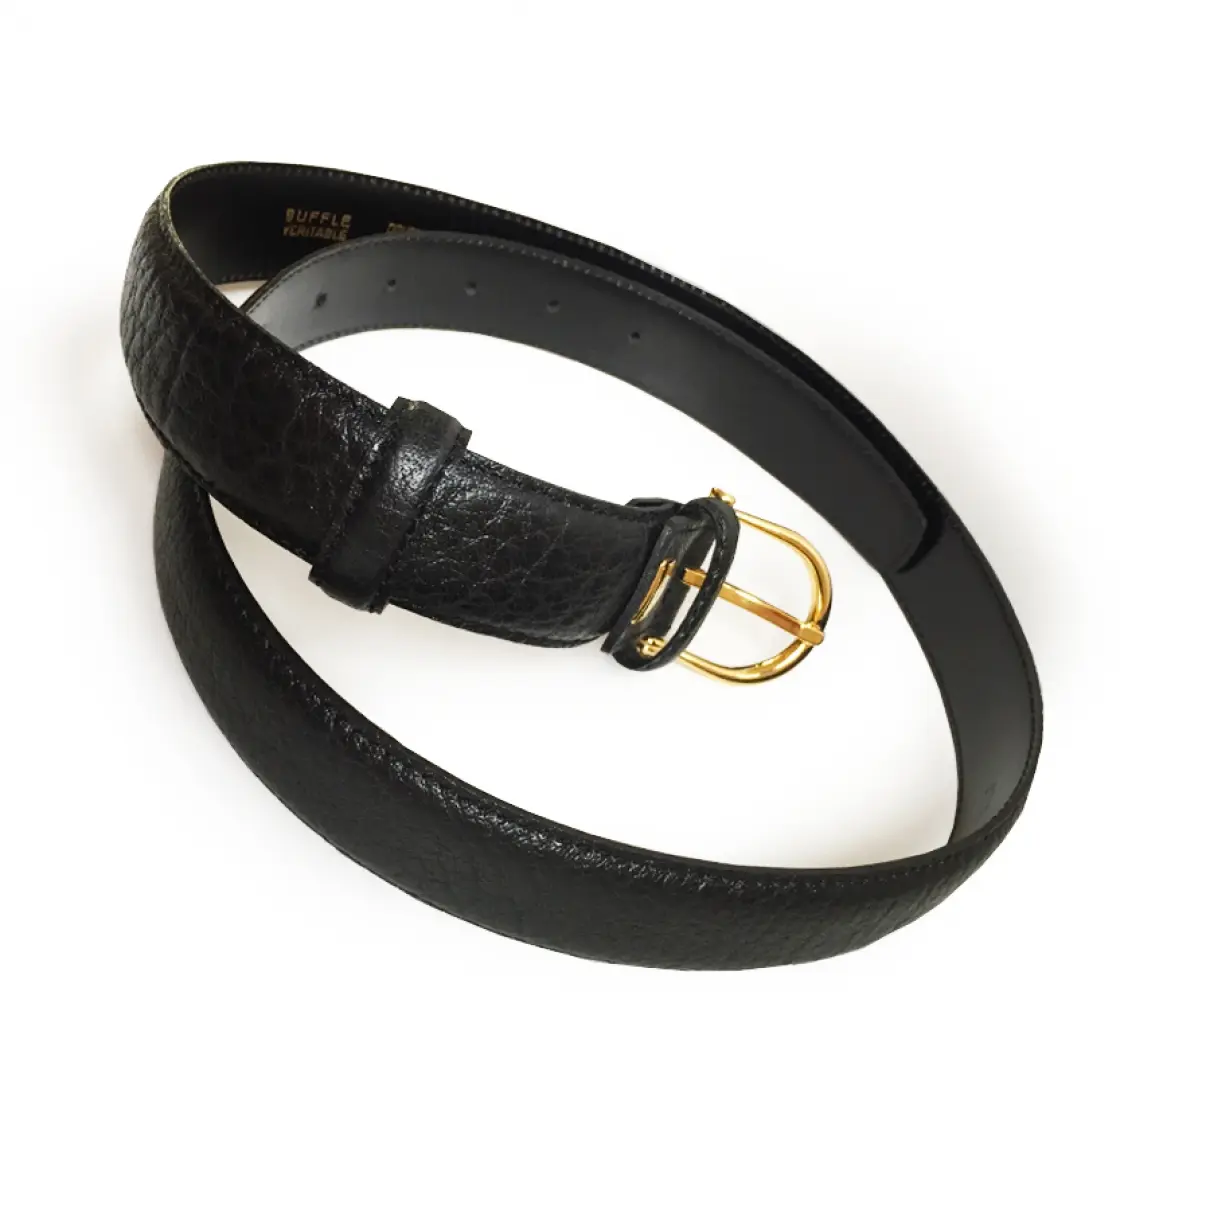 Lancel Leather belt for sale - Vintage